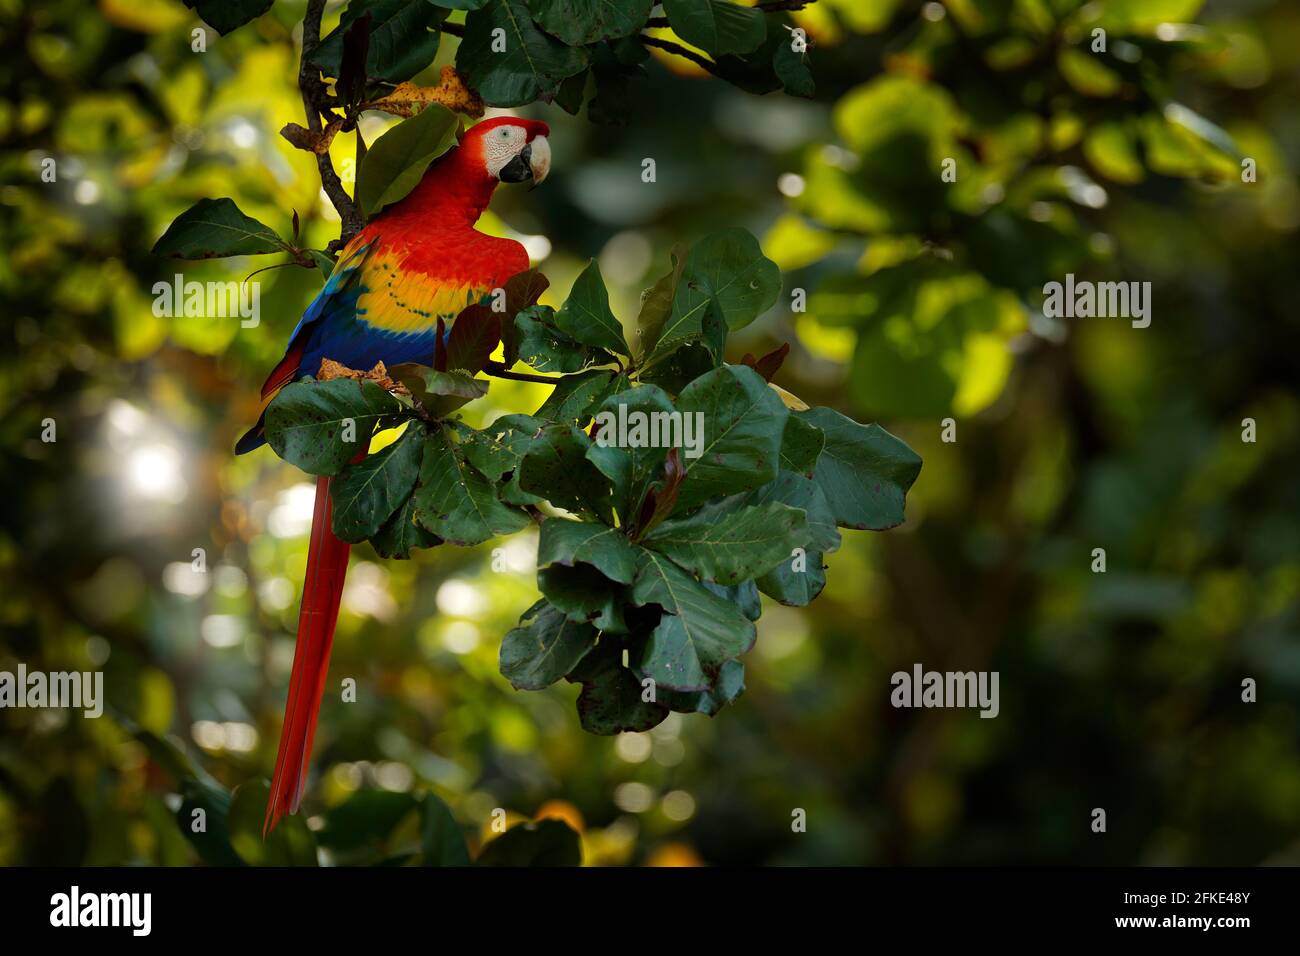 Schöner Papagei auf Baum grünen Baum in Natur Lebensraum. Roter Papagei scharlachroter Ara, Ara macao, Vogel am Ast, Costa rica. Wildlife-Szene Stockfoto